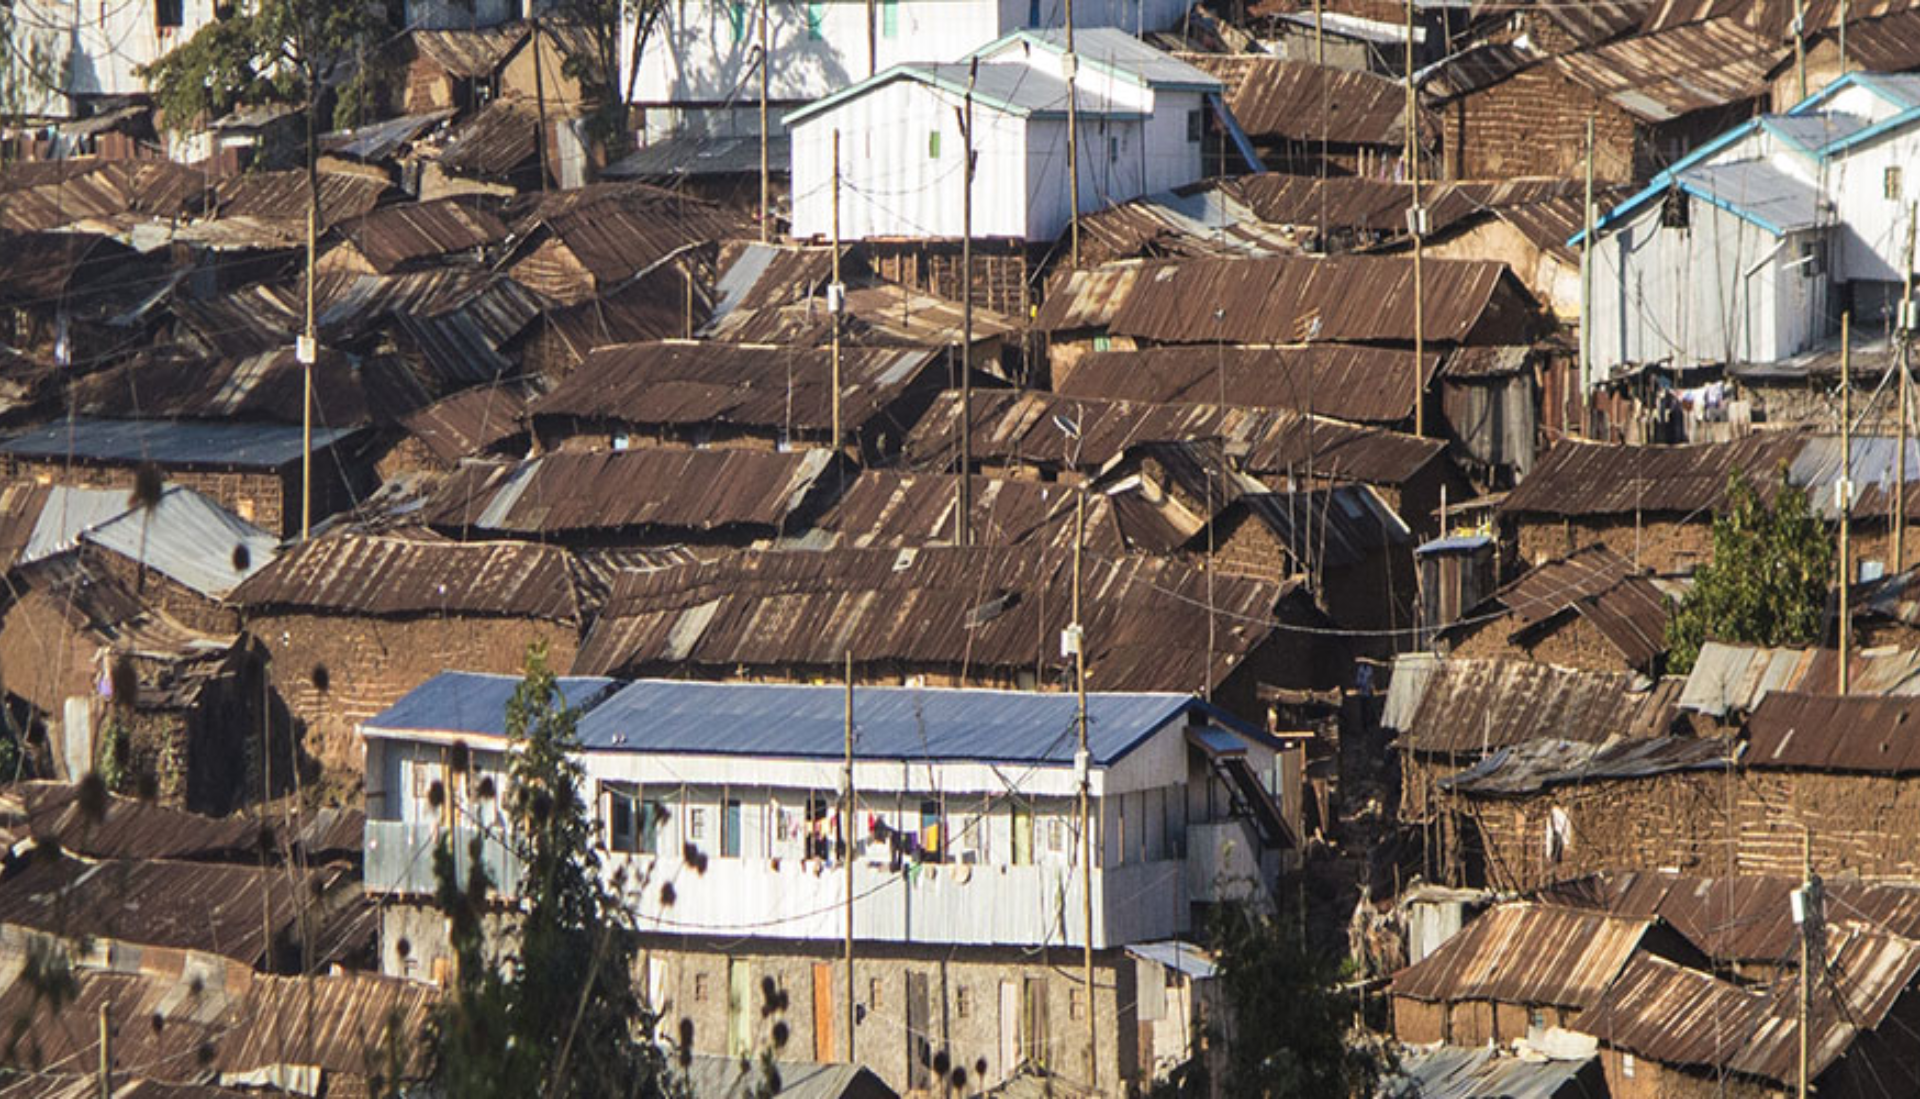 slums